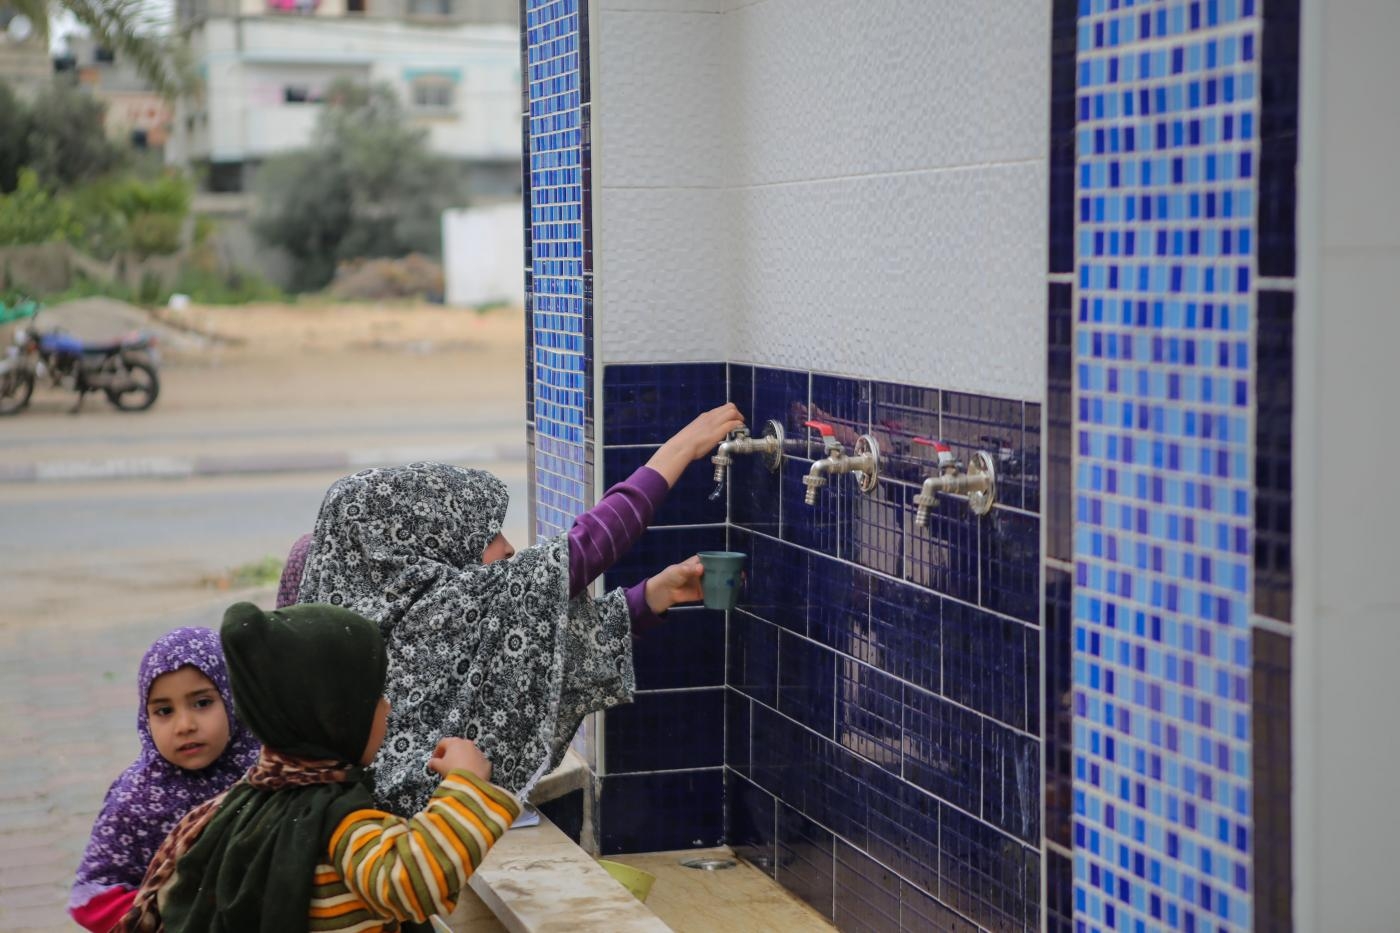 Des enfants palestiniens boivent de l’eau d’un réservoir public dans le camp de réfugiés d’al-Nuseirat à Gaza, le 15 mars 2019 (MEE/Mohammed al-Hajjar)